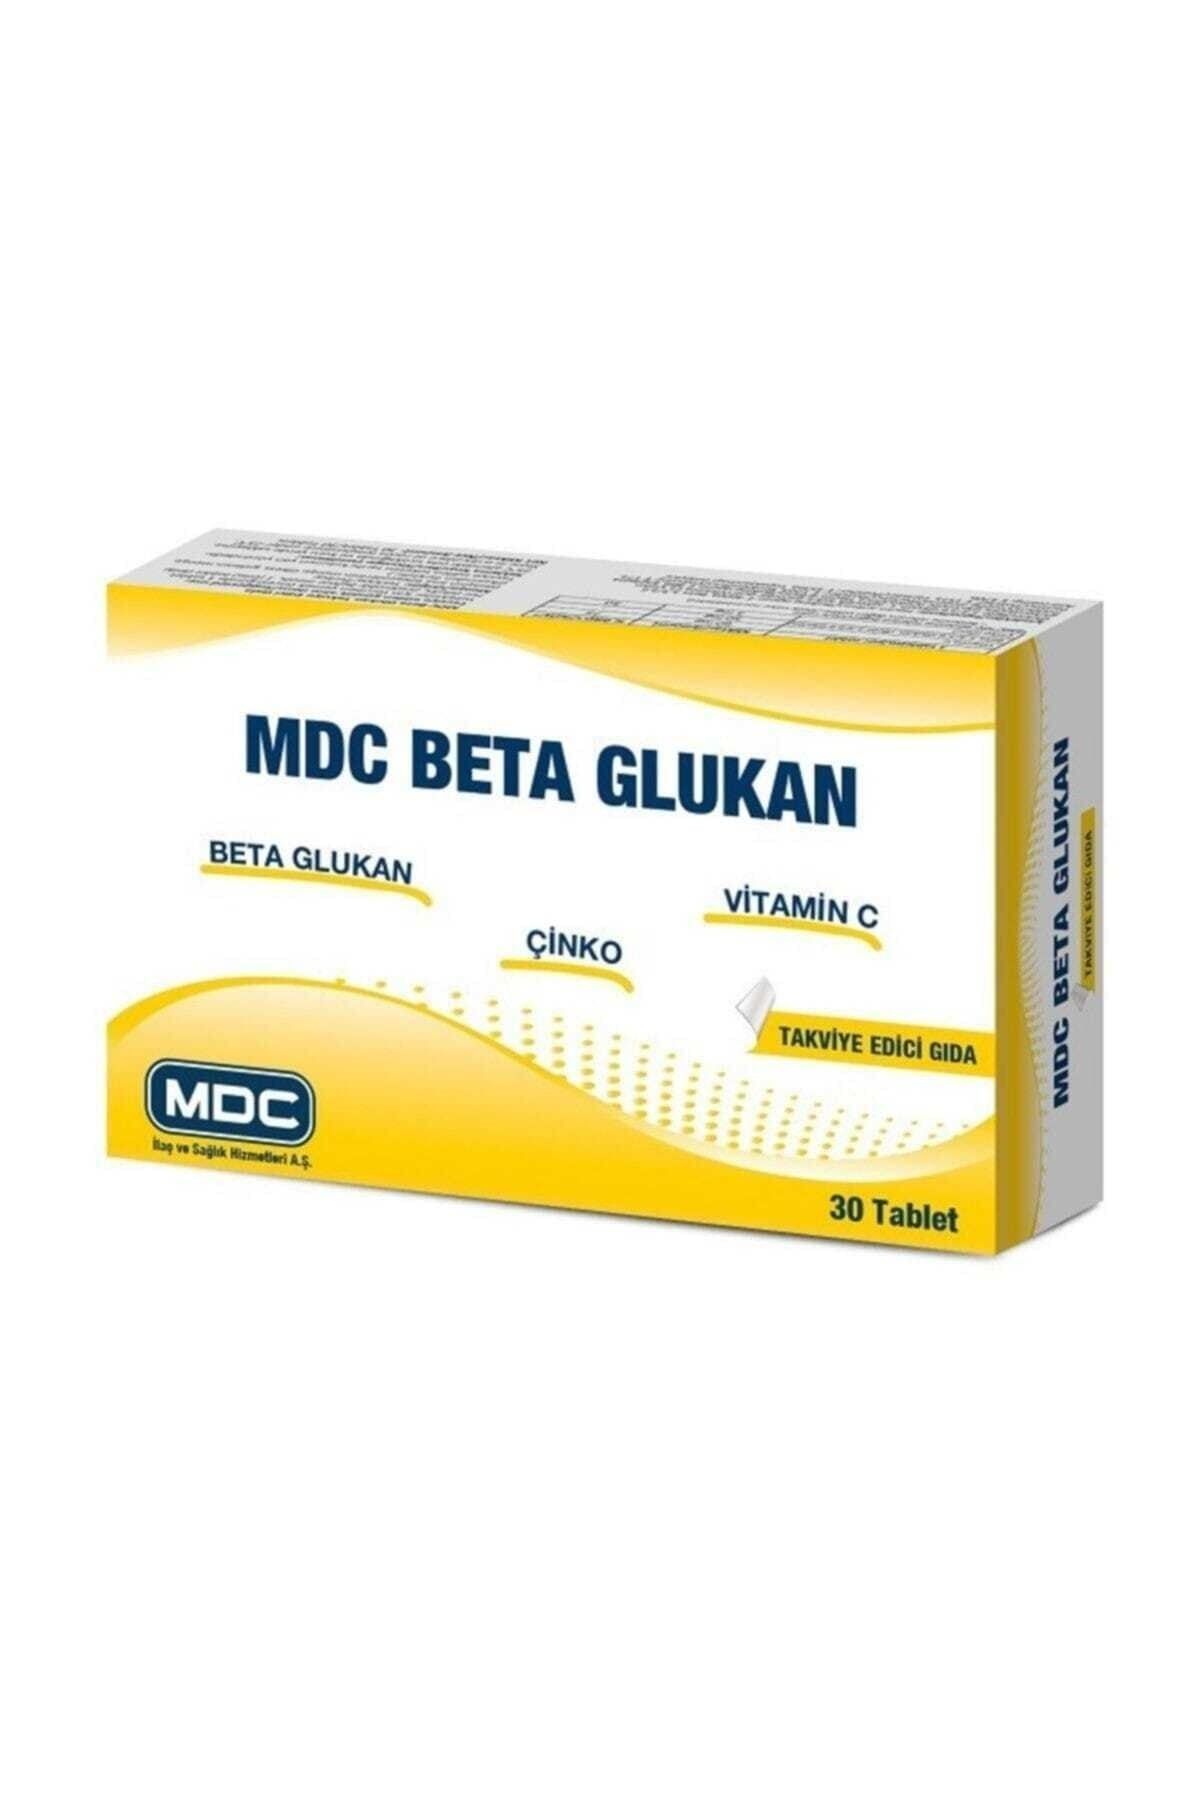 MDC Beta Glukan 30 Tablet Skt:03/2022